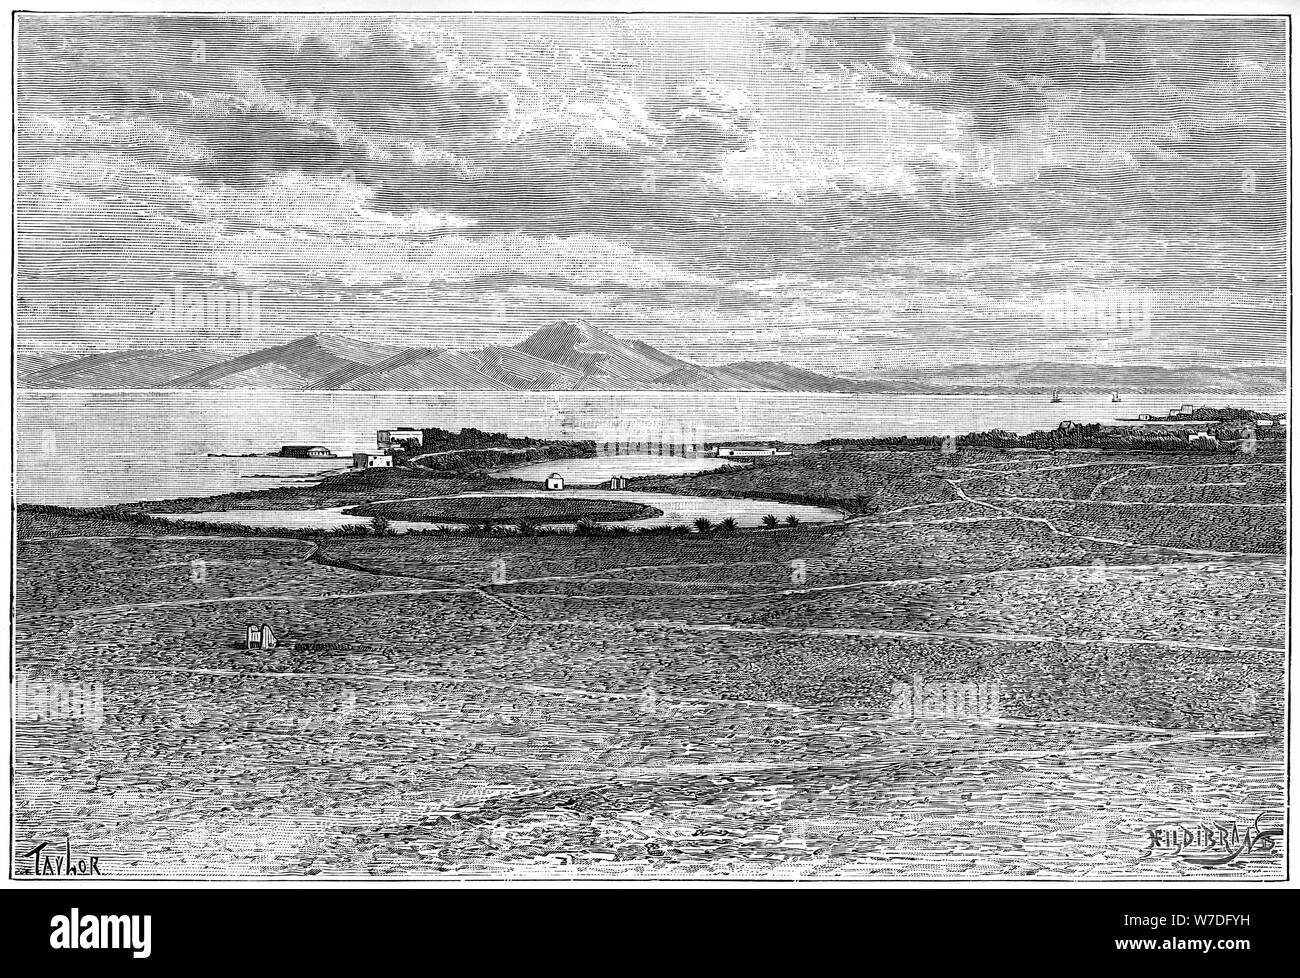 Vecchi porti di Cartagine, Tunisia, c1890. Artista: Hildibrand Foto Stock